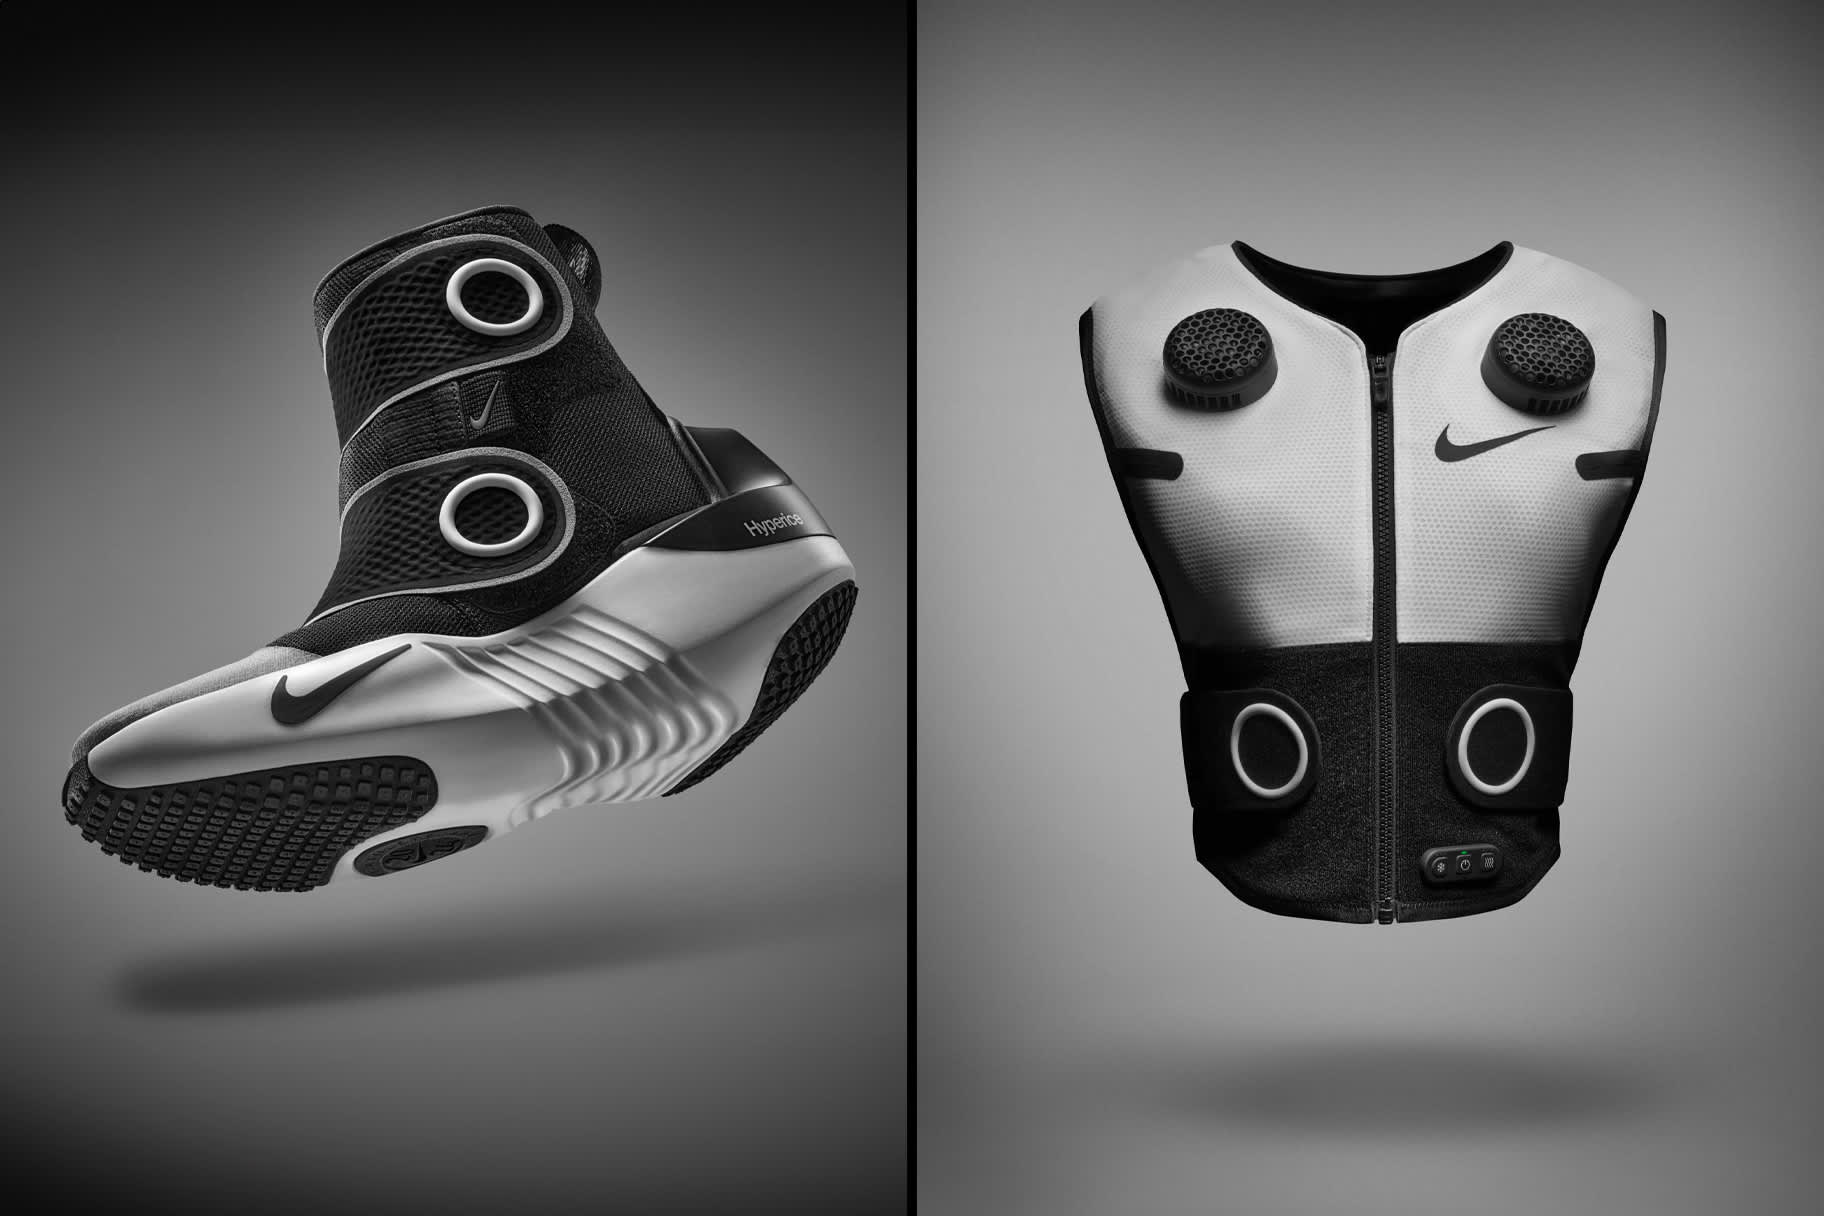 Nike e Hyperice presentano rivoluzionari articoli con tecnologia integrata pensati per atleti e atlete